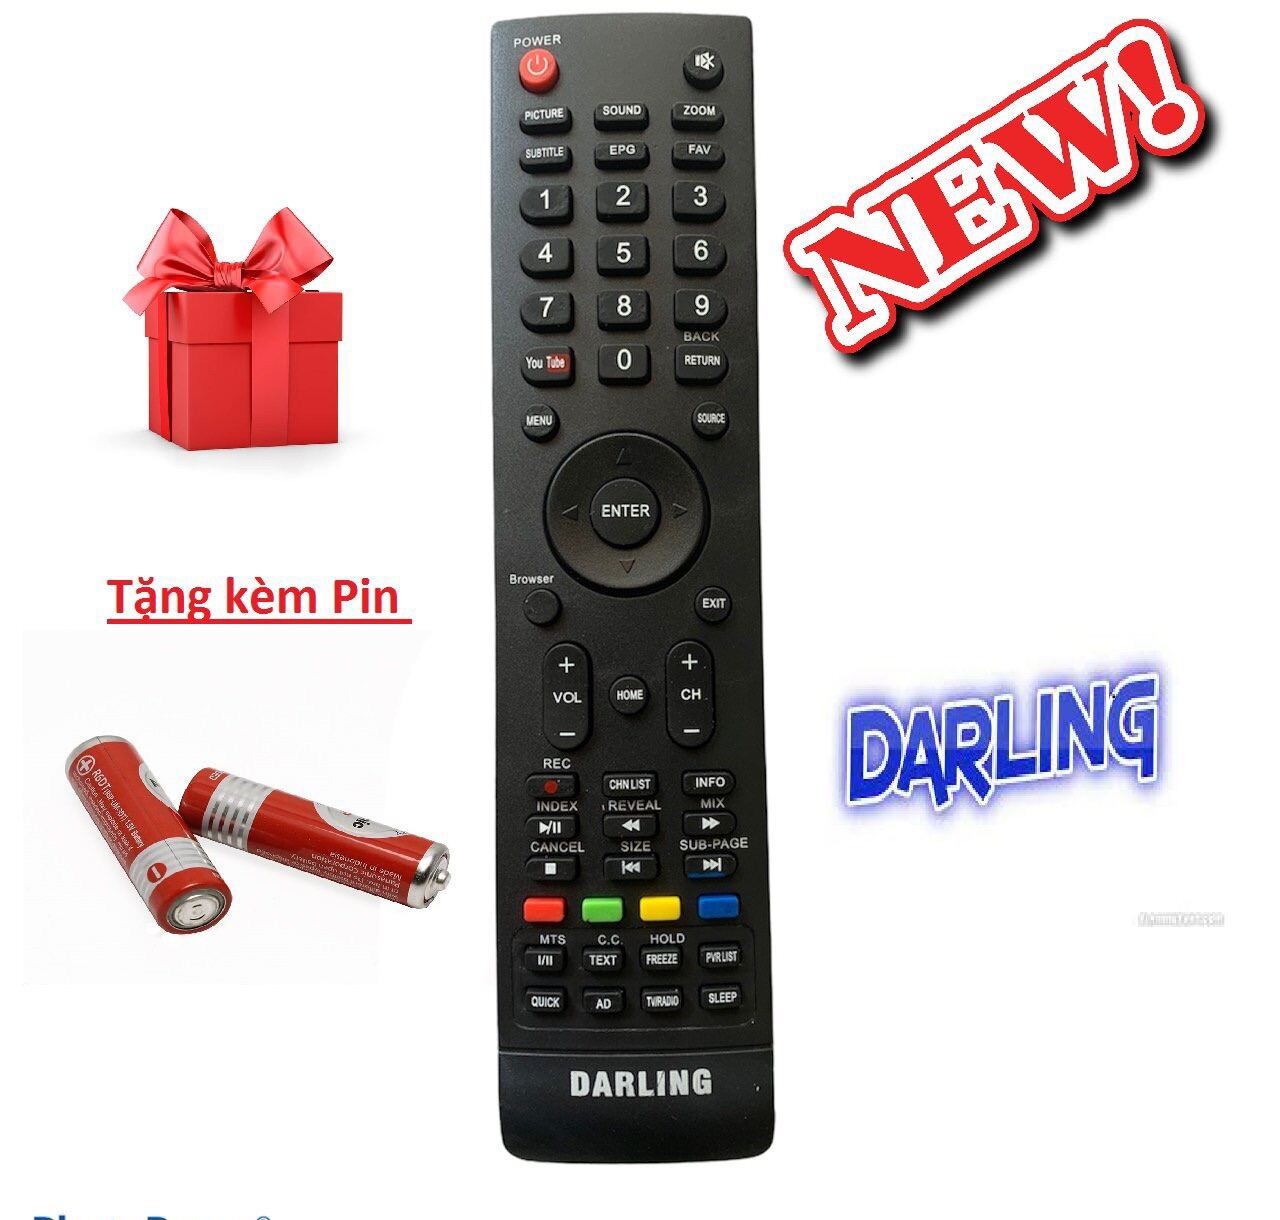 Điều khiển tivi Darling Smart - Hàng tốt, tặng kèm pin remote tivi darling bản to youtube internet loại 1